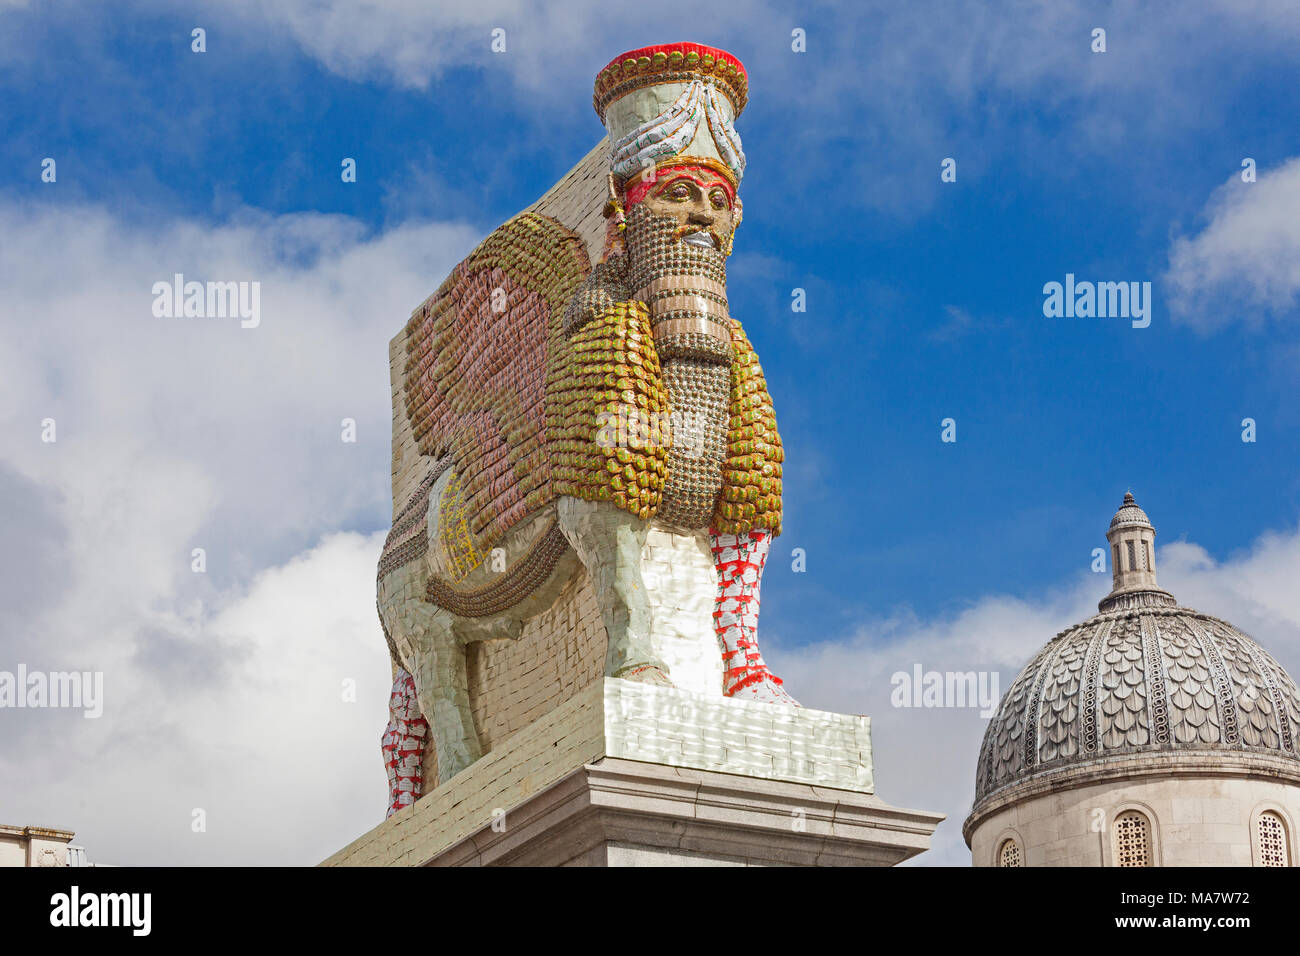 Londra, Trafalgar Square il quarto plinto occupata da una replica di Lamassu divinità alata da Ninive, intitolato "Il nemico invisibile non dovrebbero esistere' Foto Stock